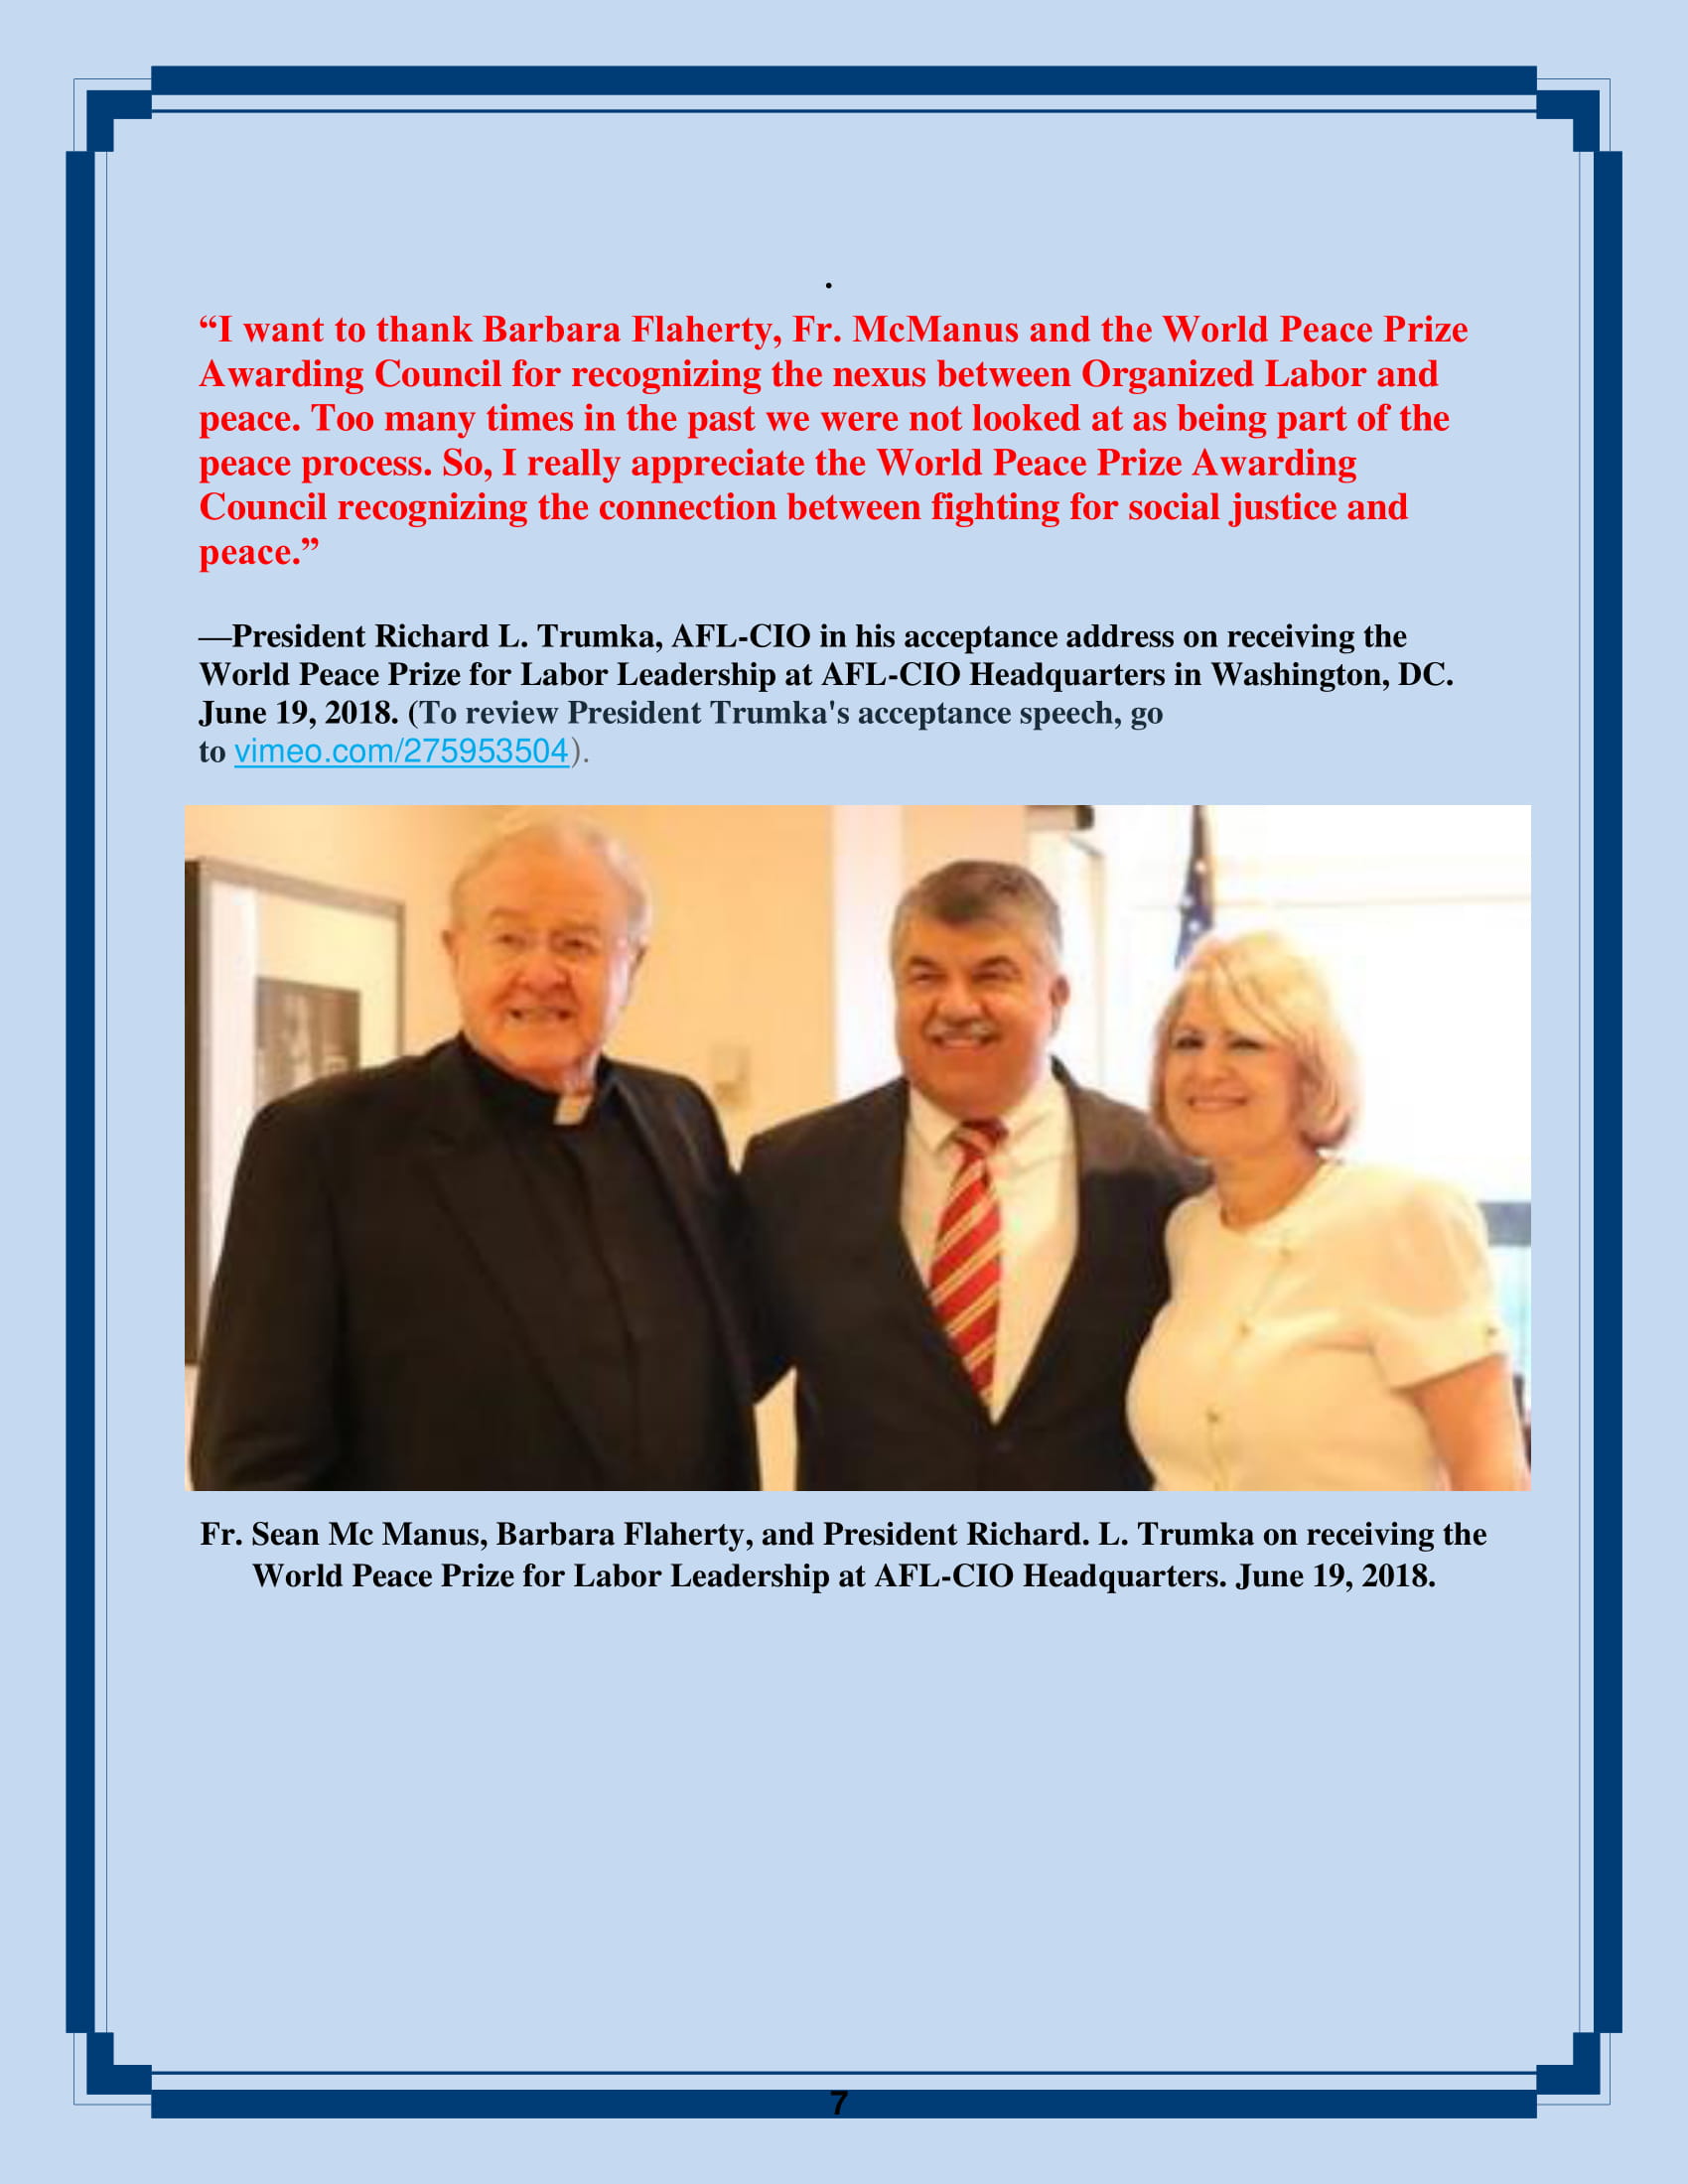 Fr. Sean Mc Manus, Barbara Flaherty, and President Richard. L. Trumka